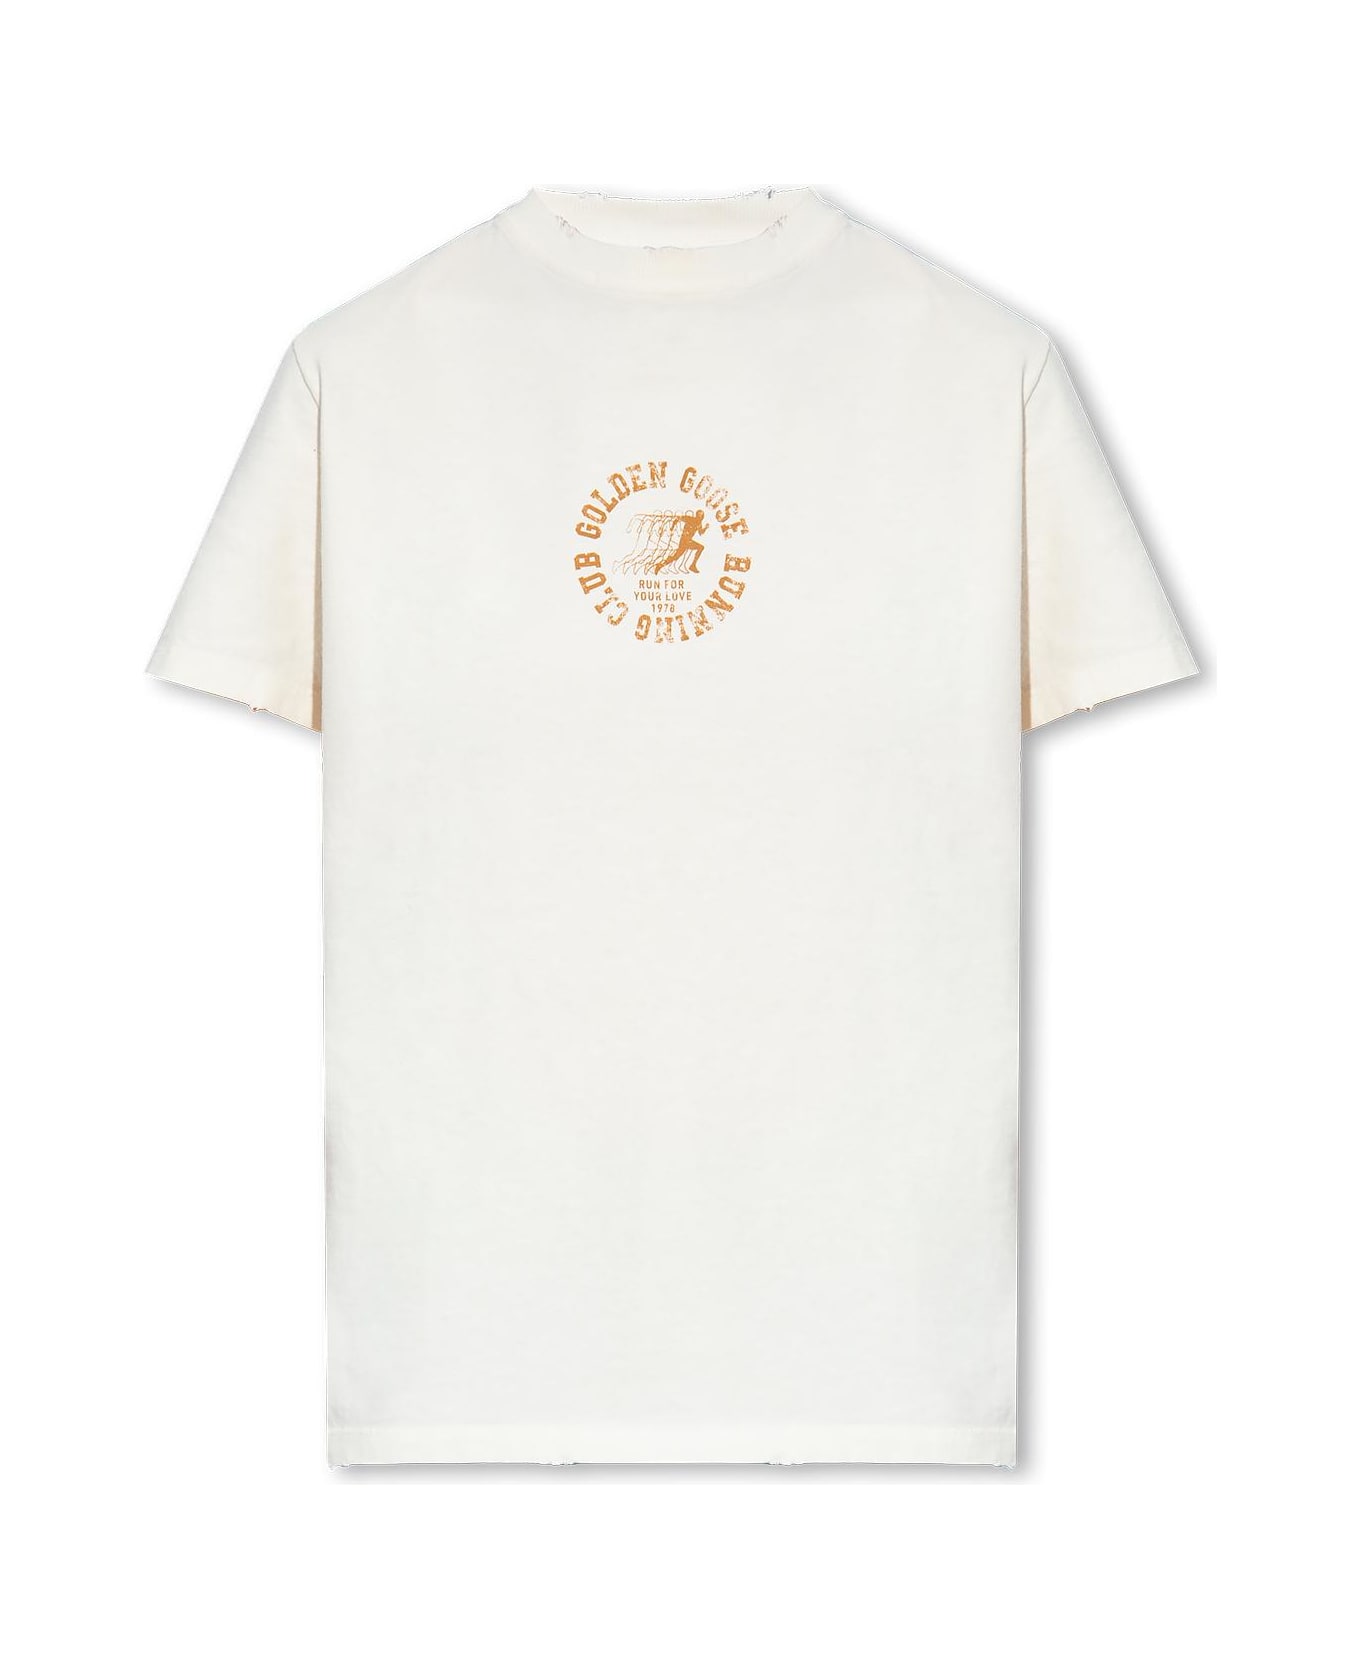 Golden Goose Printed T-shirt - HERITAGE WHITE MALT BALL (White)